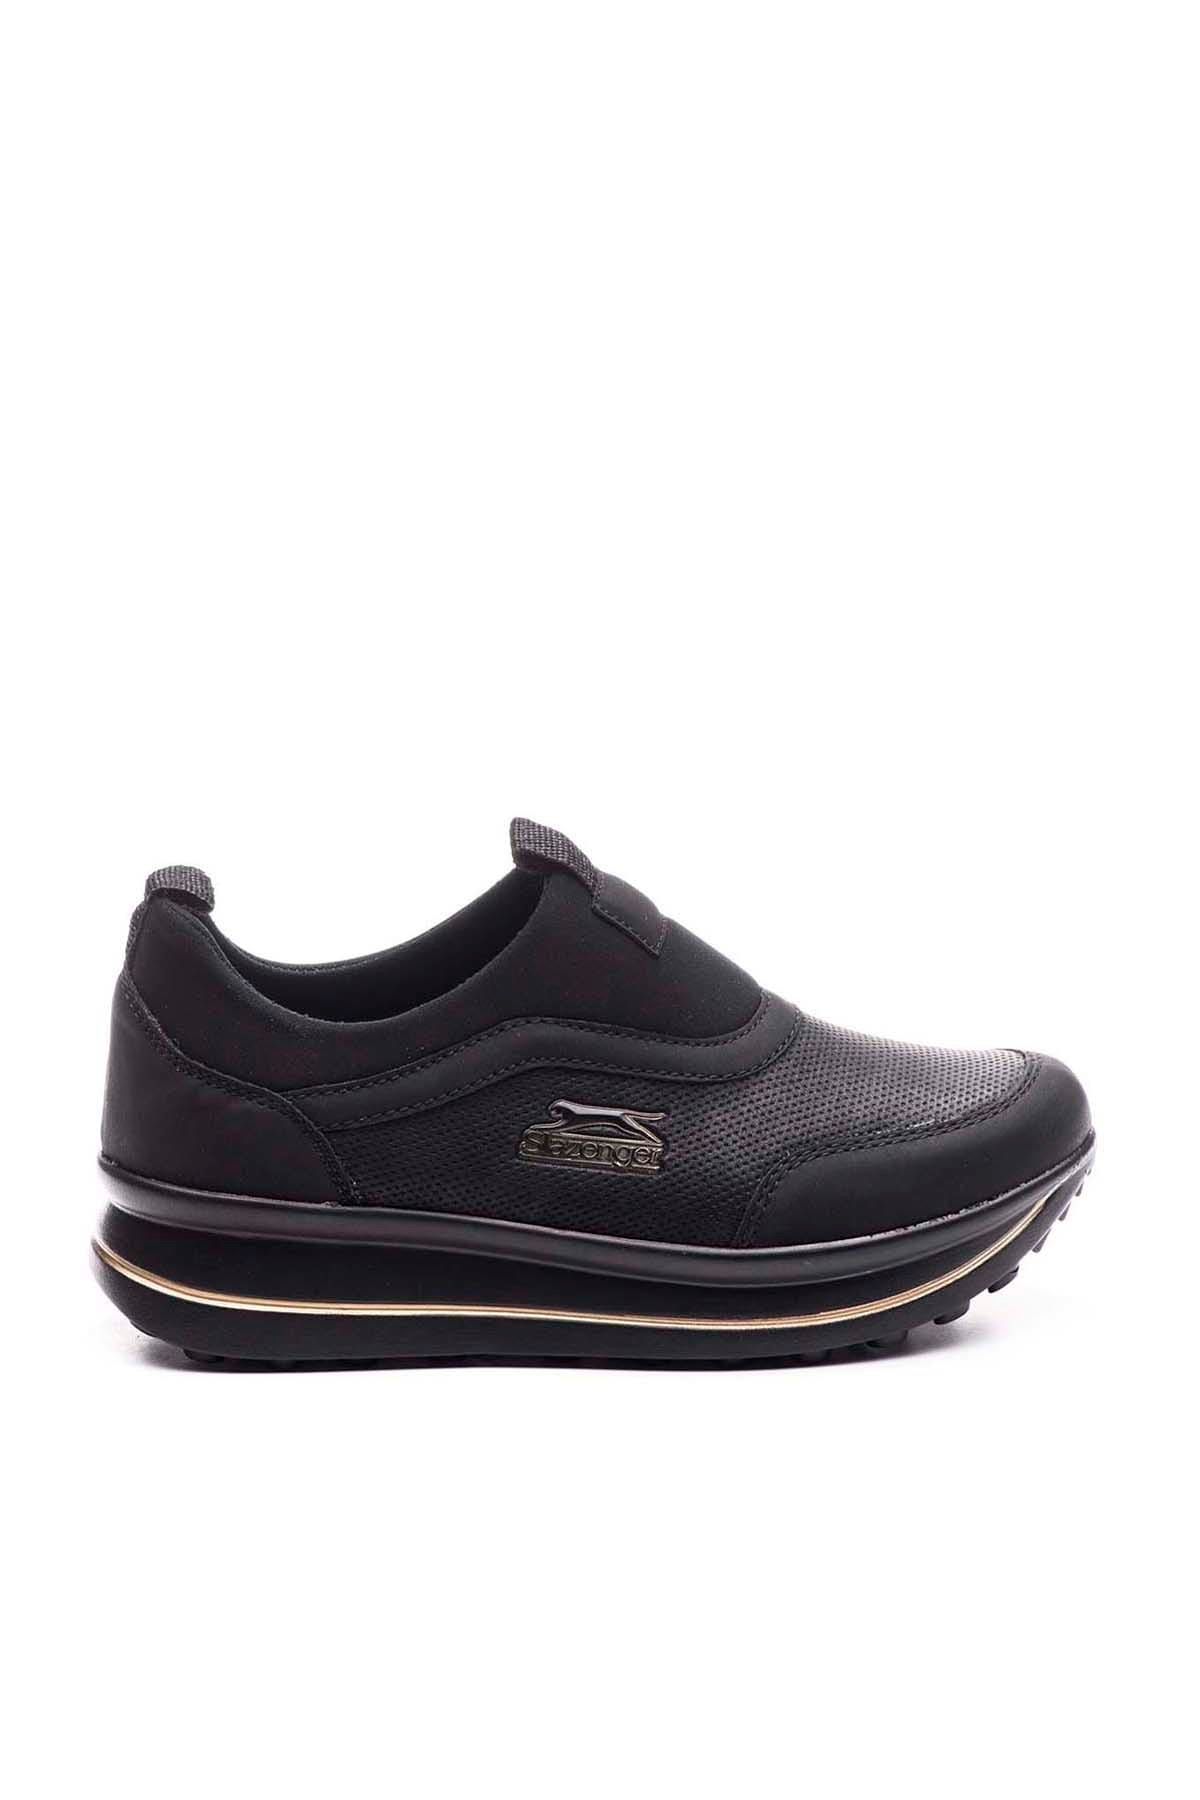 Slazenger Fun Neop Sneaker Kadın Ayakkabı Siyah